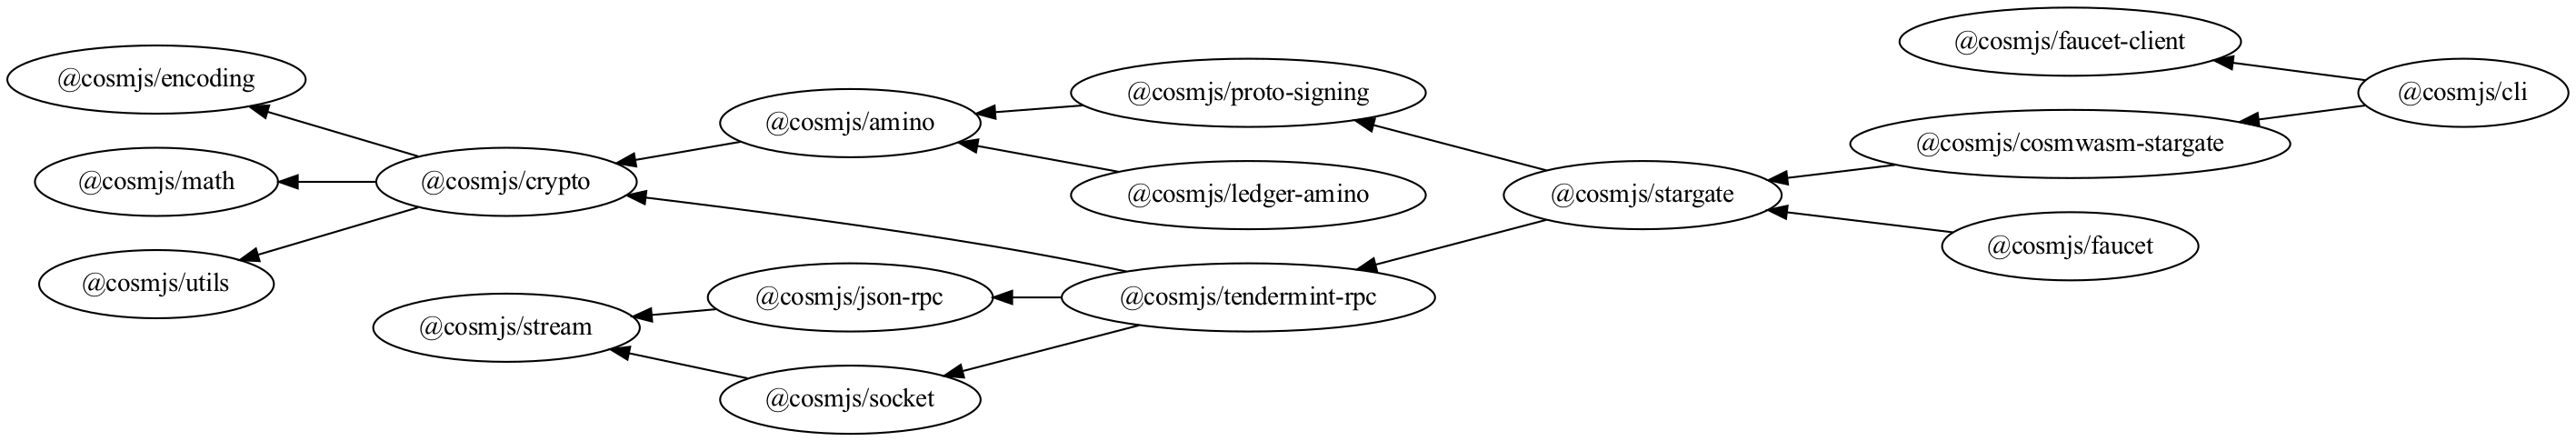 CosmJS dependency tree